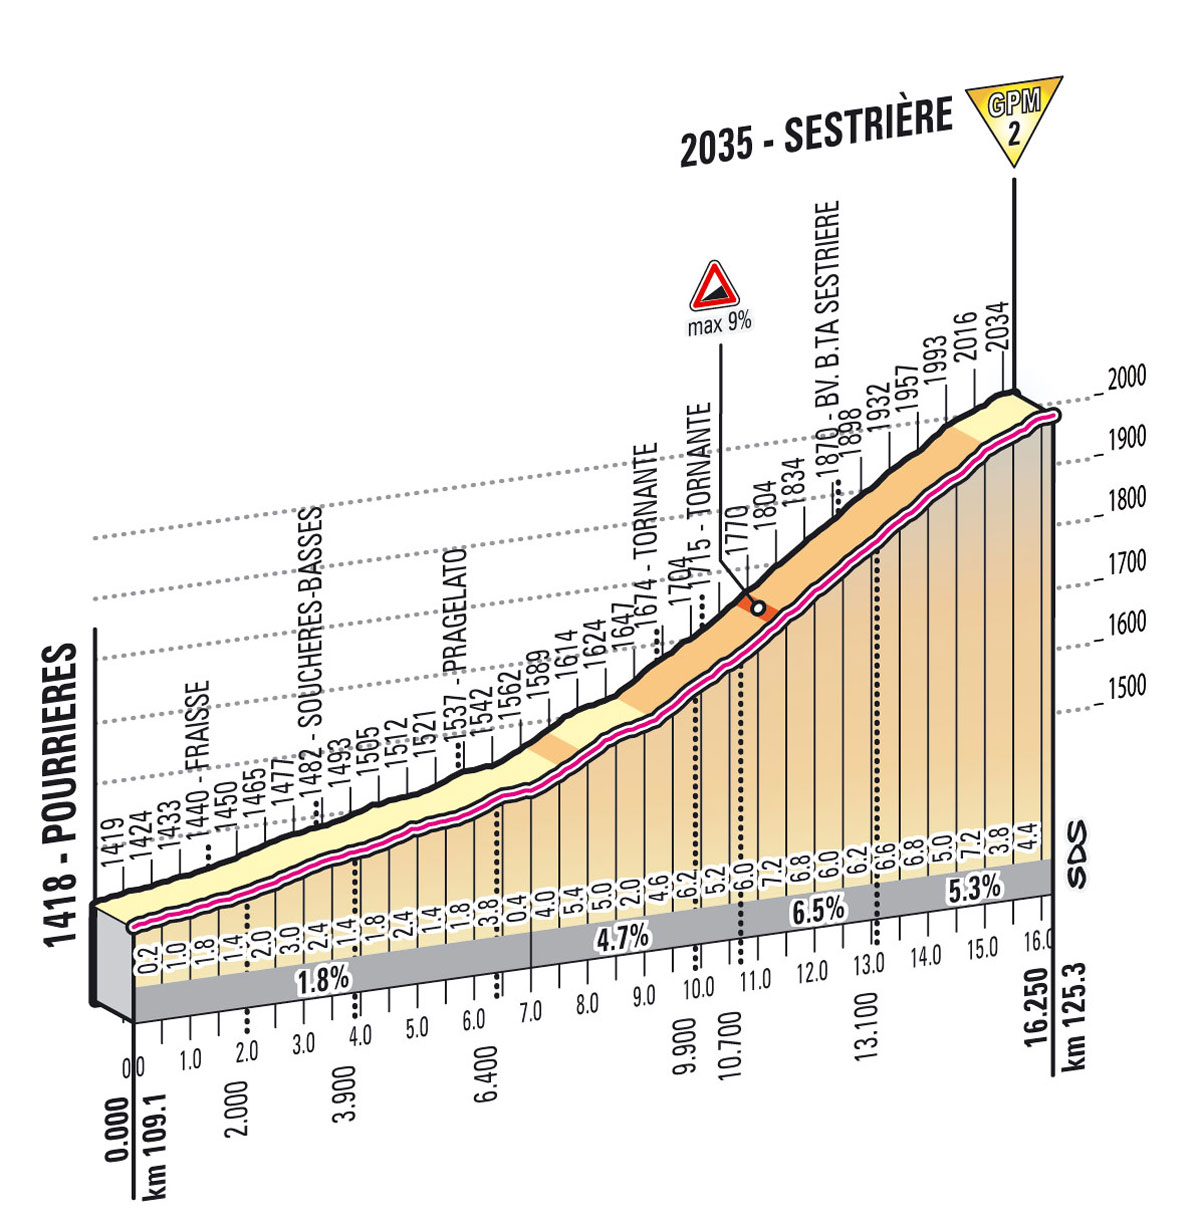 Giro d'Italia 2013 stage 14 - Sestriere